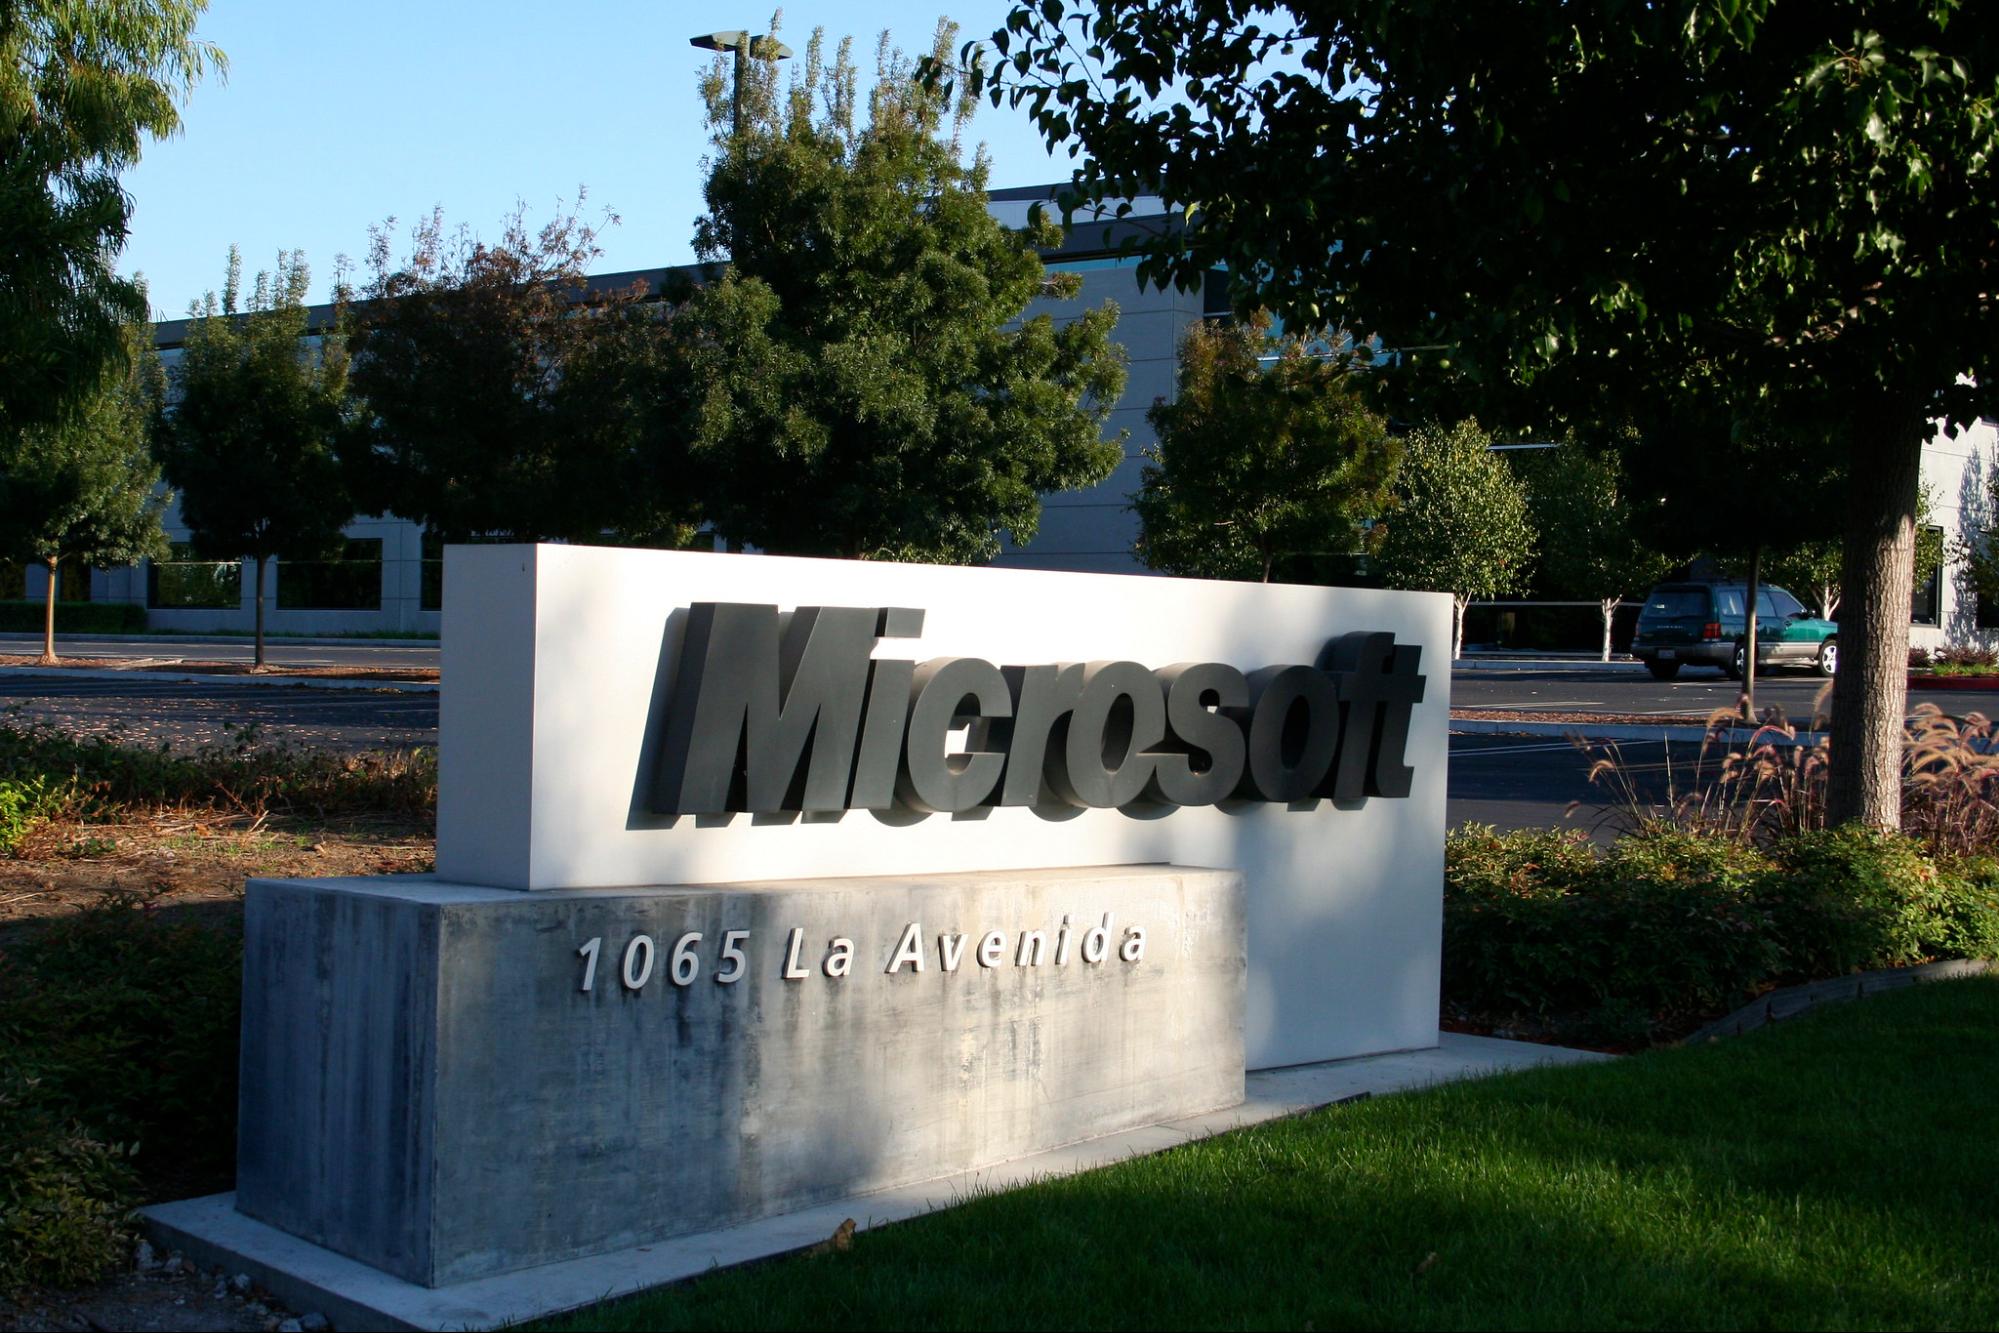 Big tech, layoffs, Microsoft, scaleback, consolidation